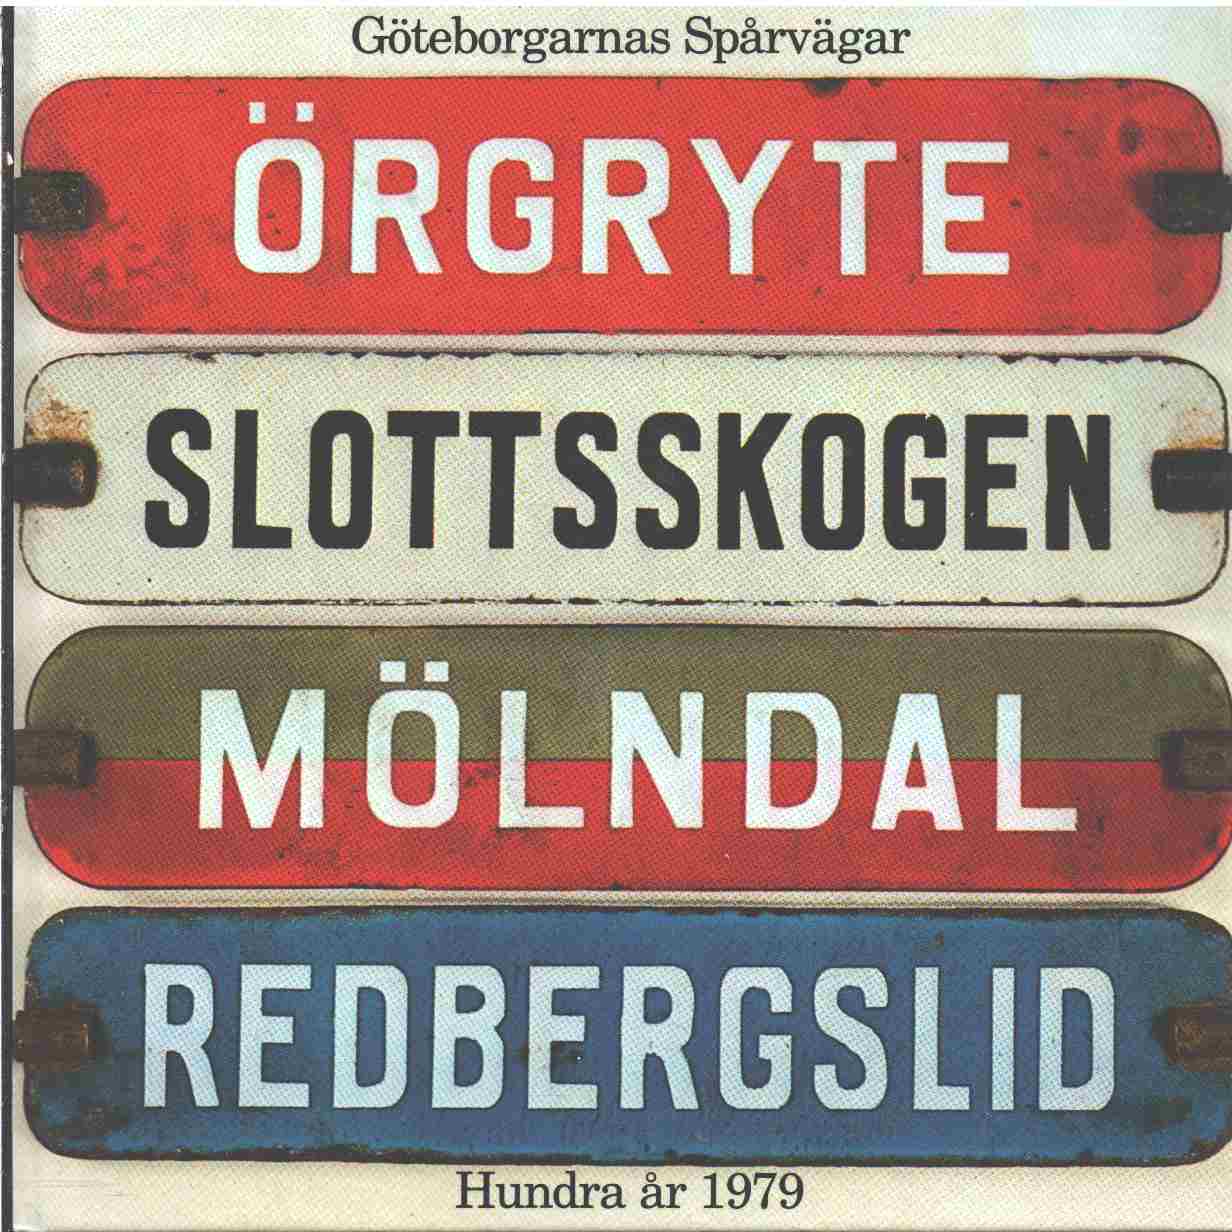 Göteborgarnas spårvägar hundra år 1979 - Red. 